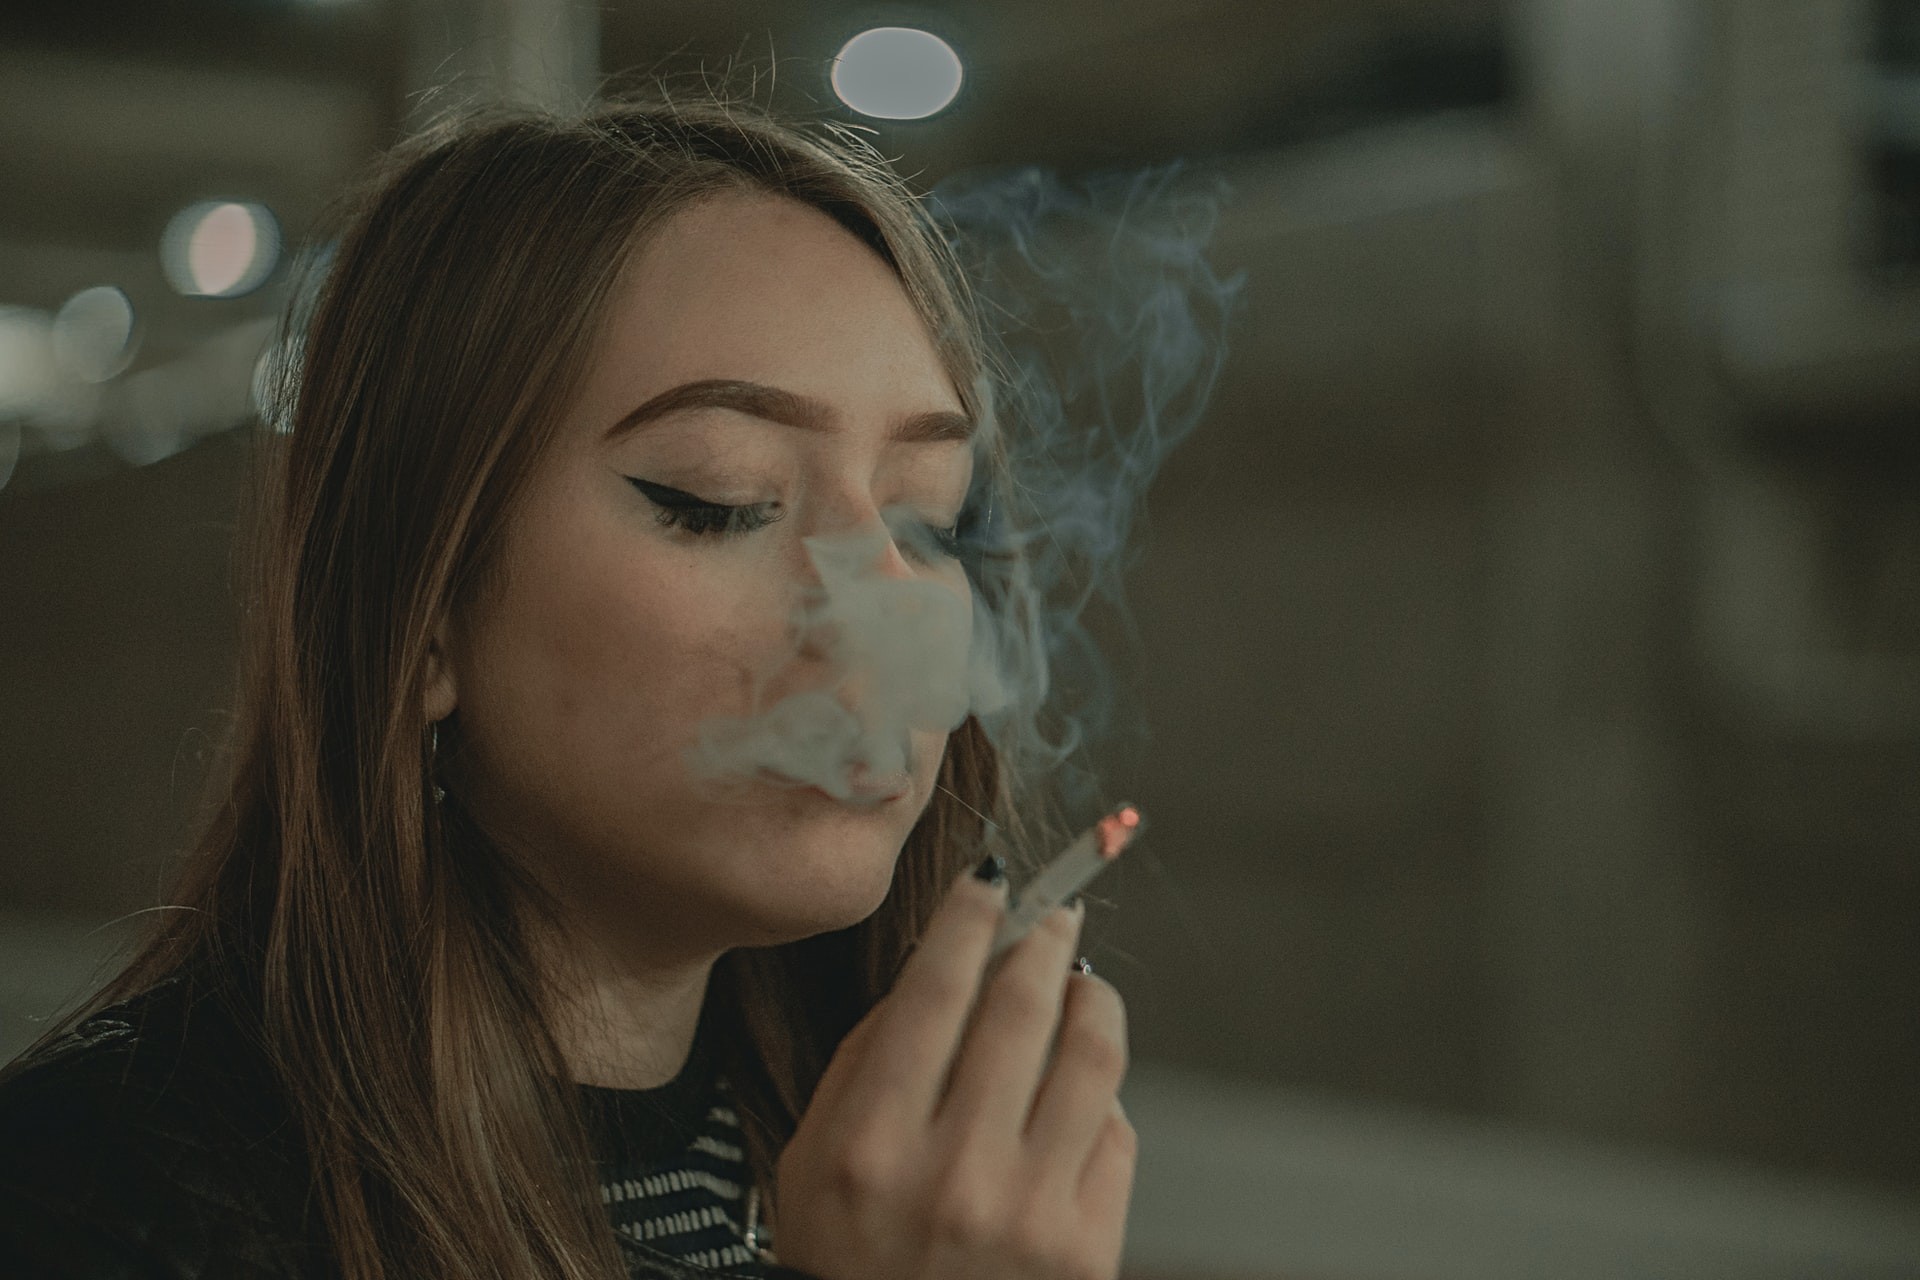  89% dos novos fumantes tornam-se viciados aos 25 anos, de acordo com estudo (Foto: Raul Miranda/Unsplash)